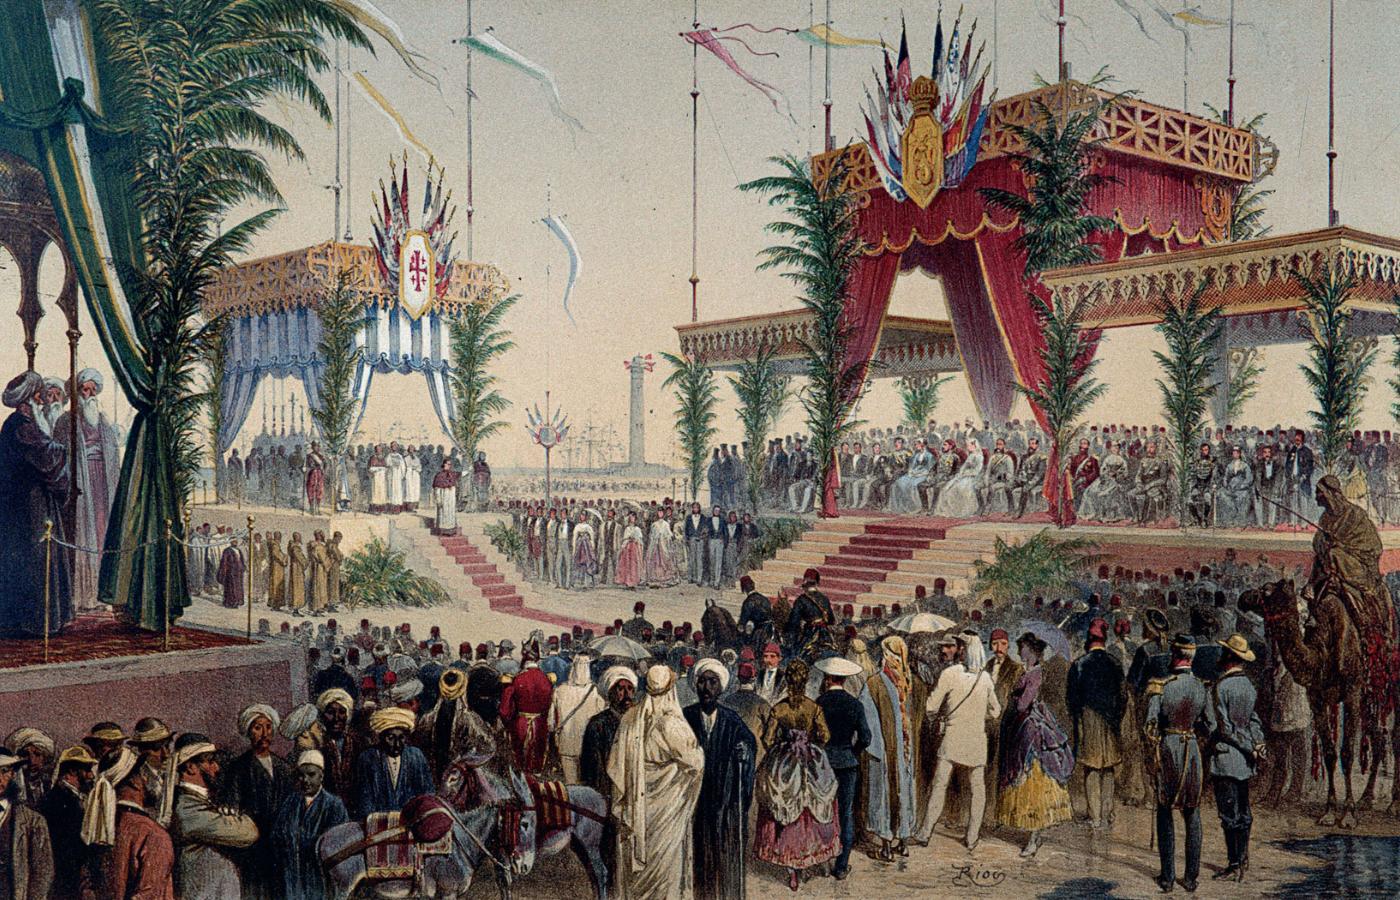 Uroczyste otwarcie Kanału Sueskiego, 1869 r. Ilustracja z epoki.